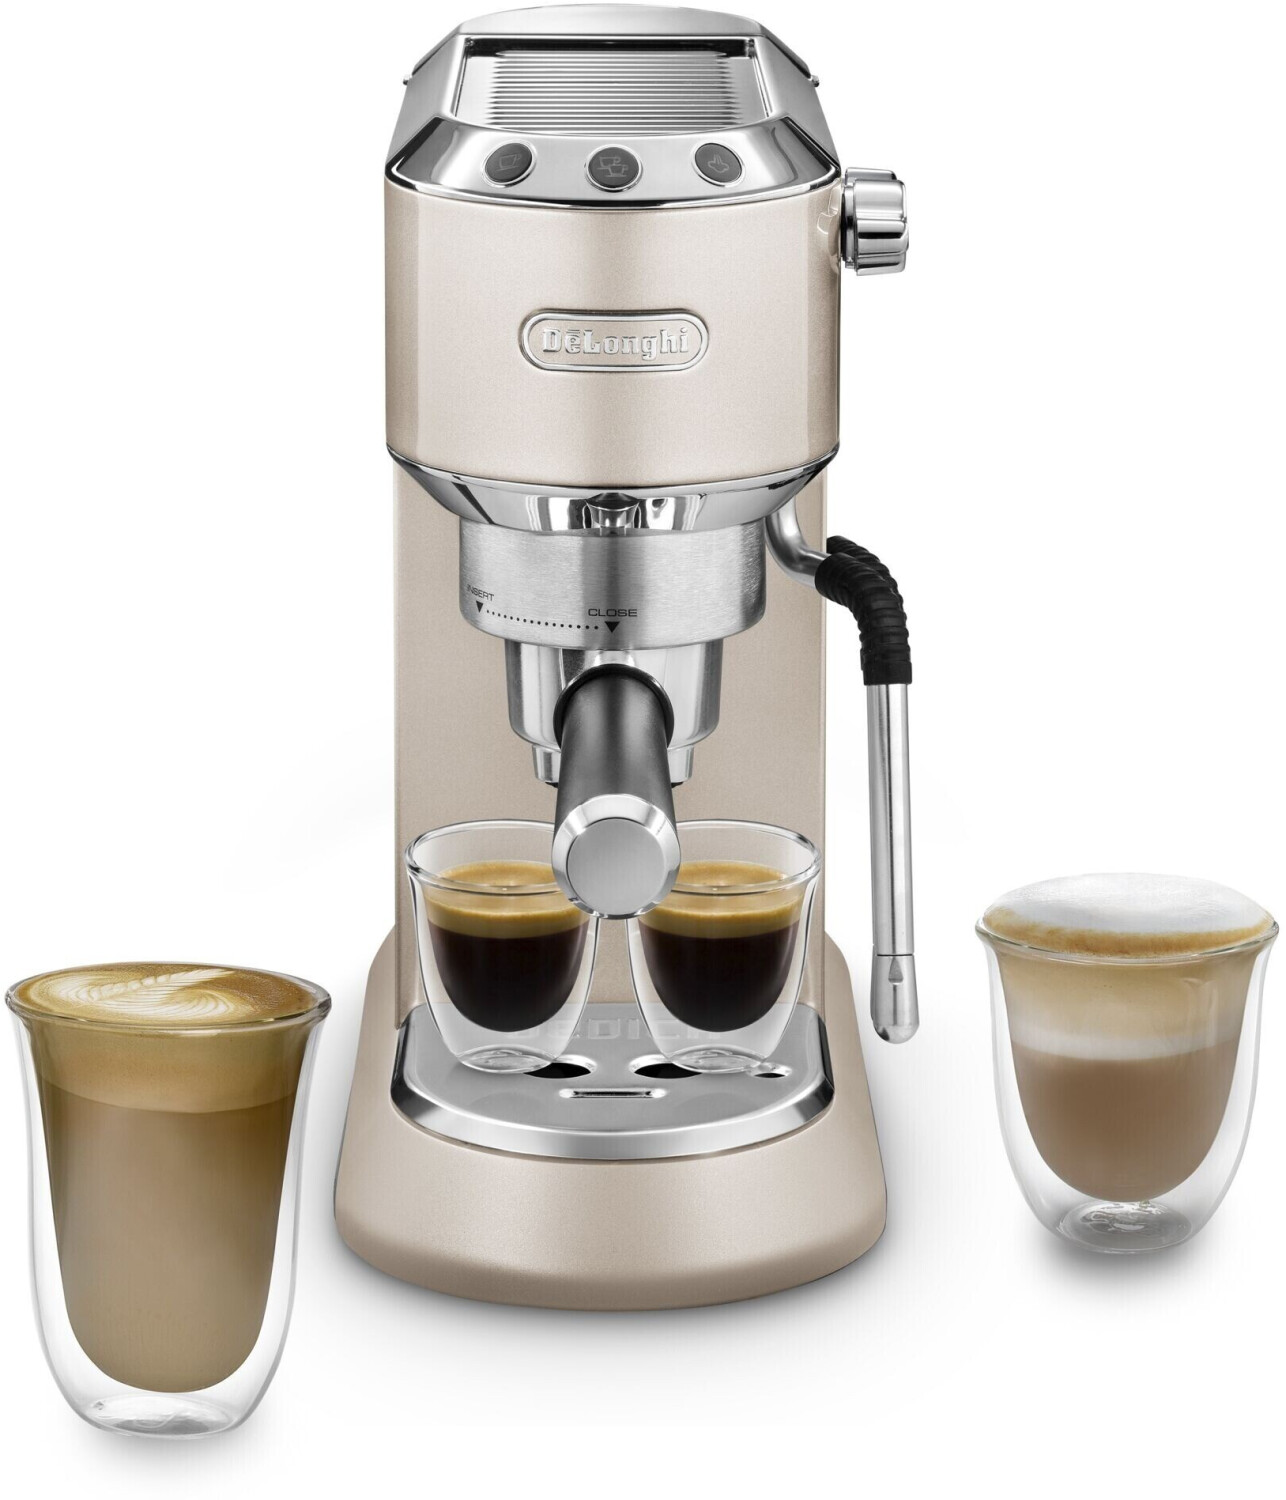 Cafetera Espresso Manual 15bares - Delonghi Stilosa Ec260bk